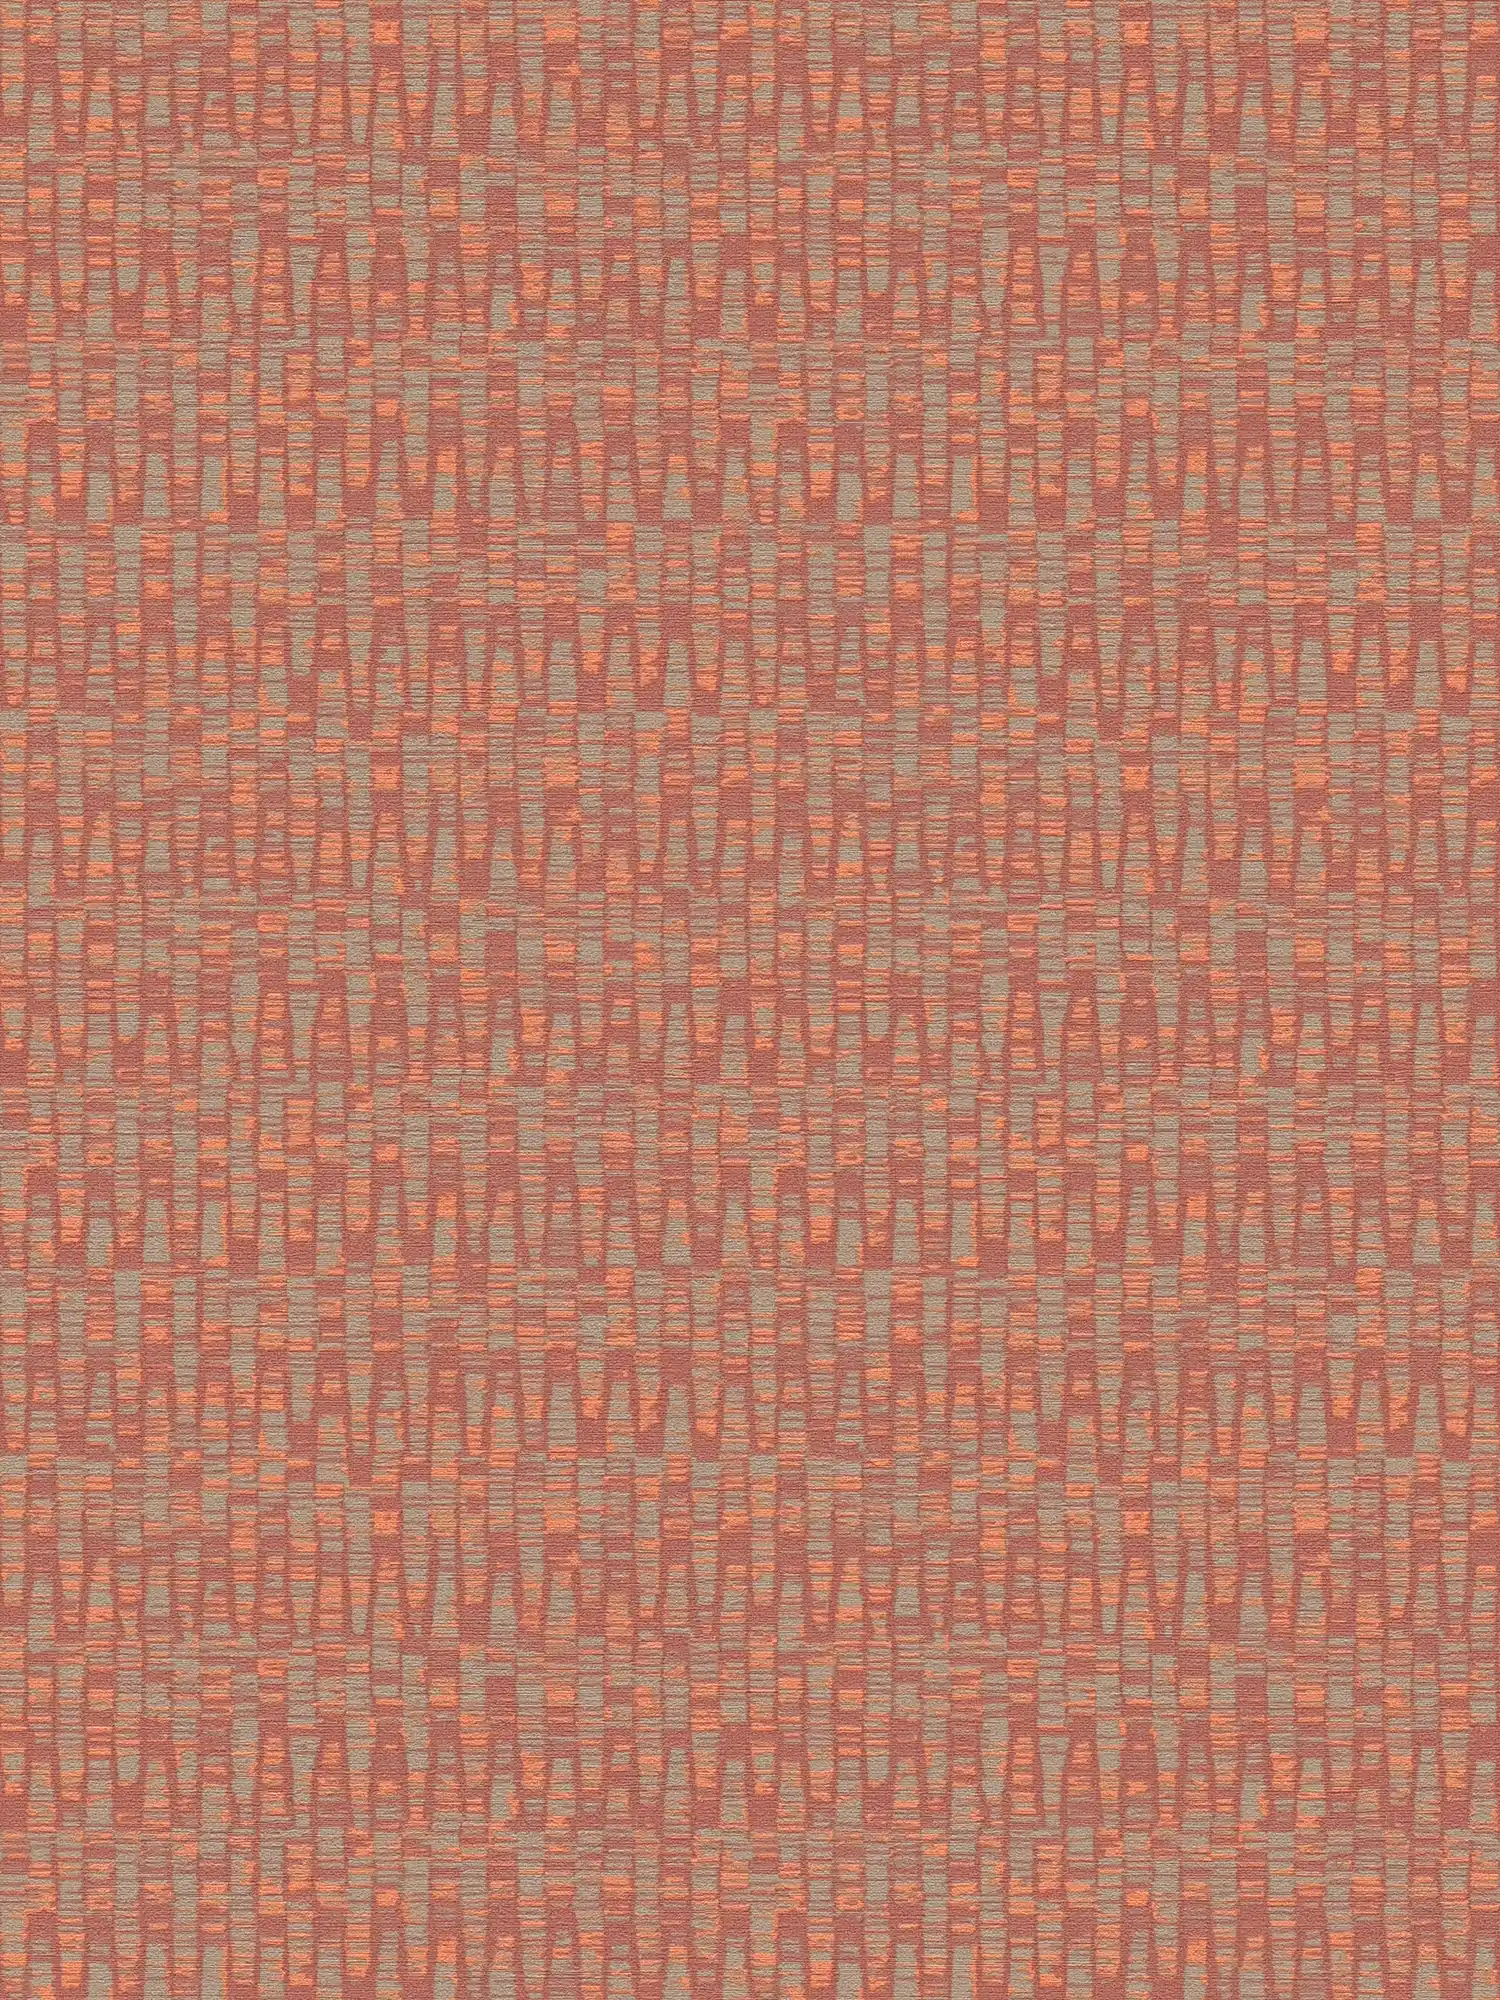 Papel pintado no tejido en colores llamativos: rojo, naranja, gris
